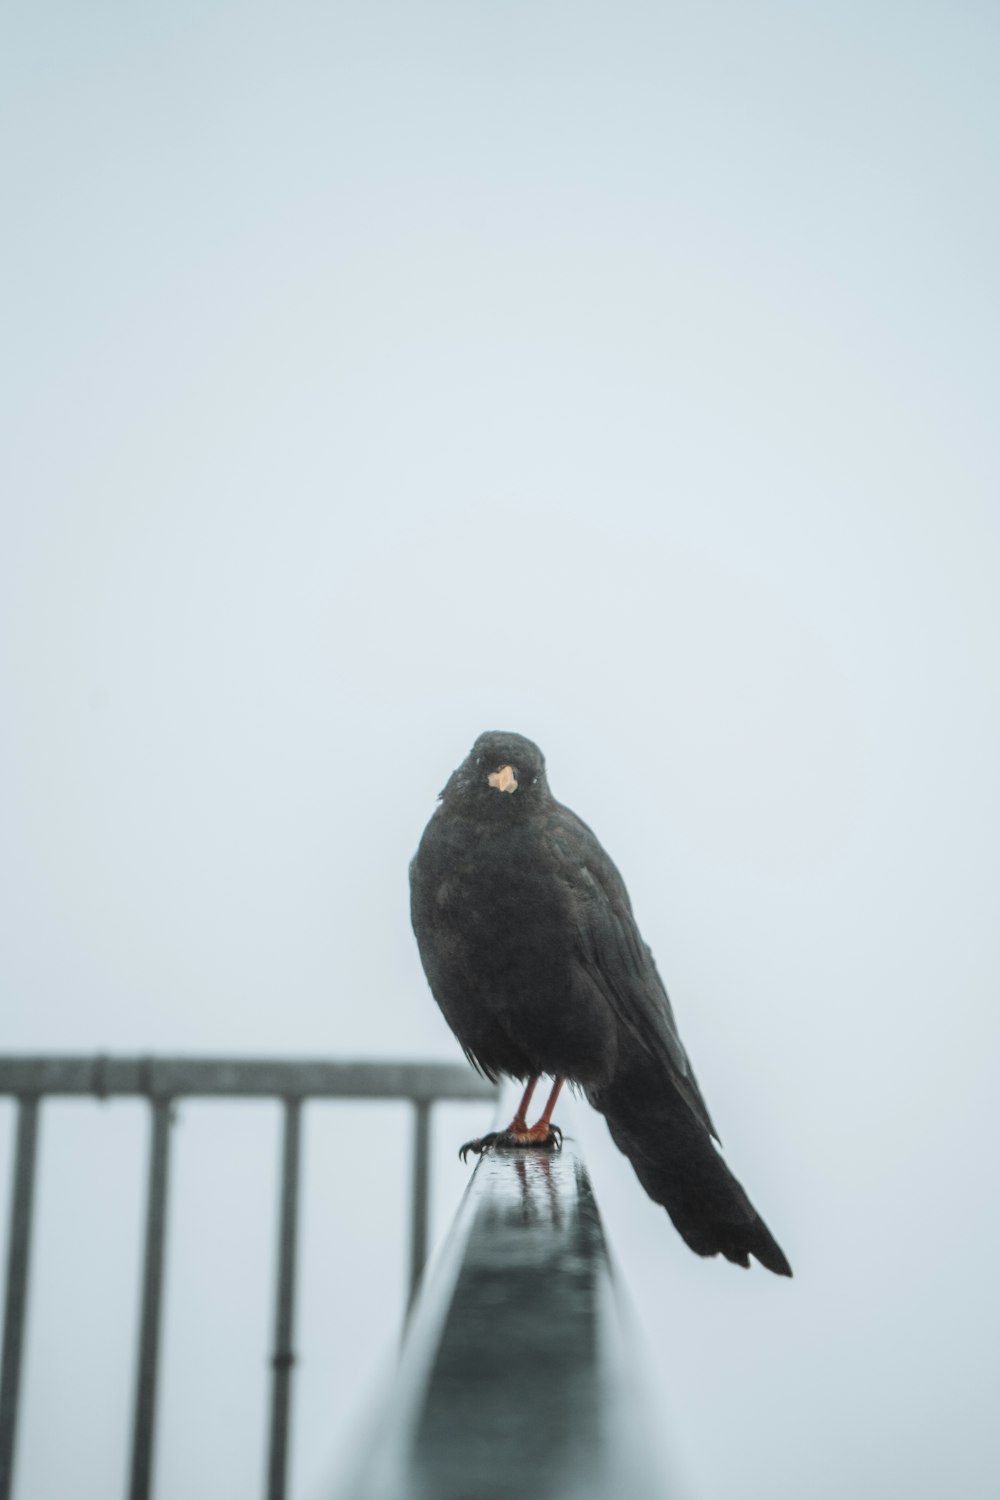 black bird on white metal fence